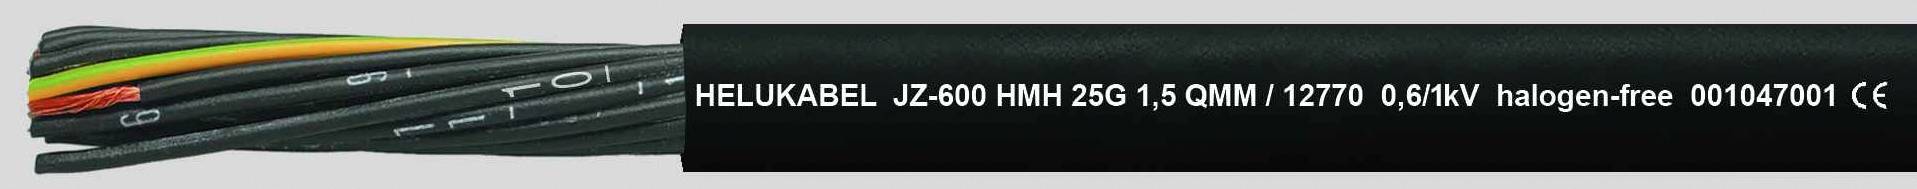 HELUKABEL JZ-600 HMH Steuerleitung 3 G 2.50 mm² Schwarz 12772-1000 1000 m